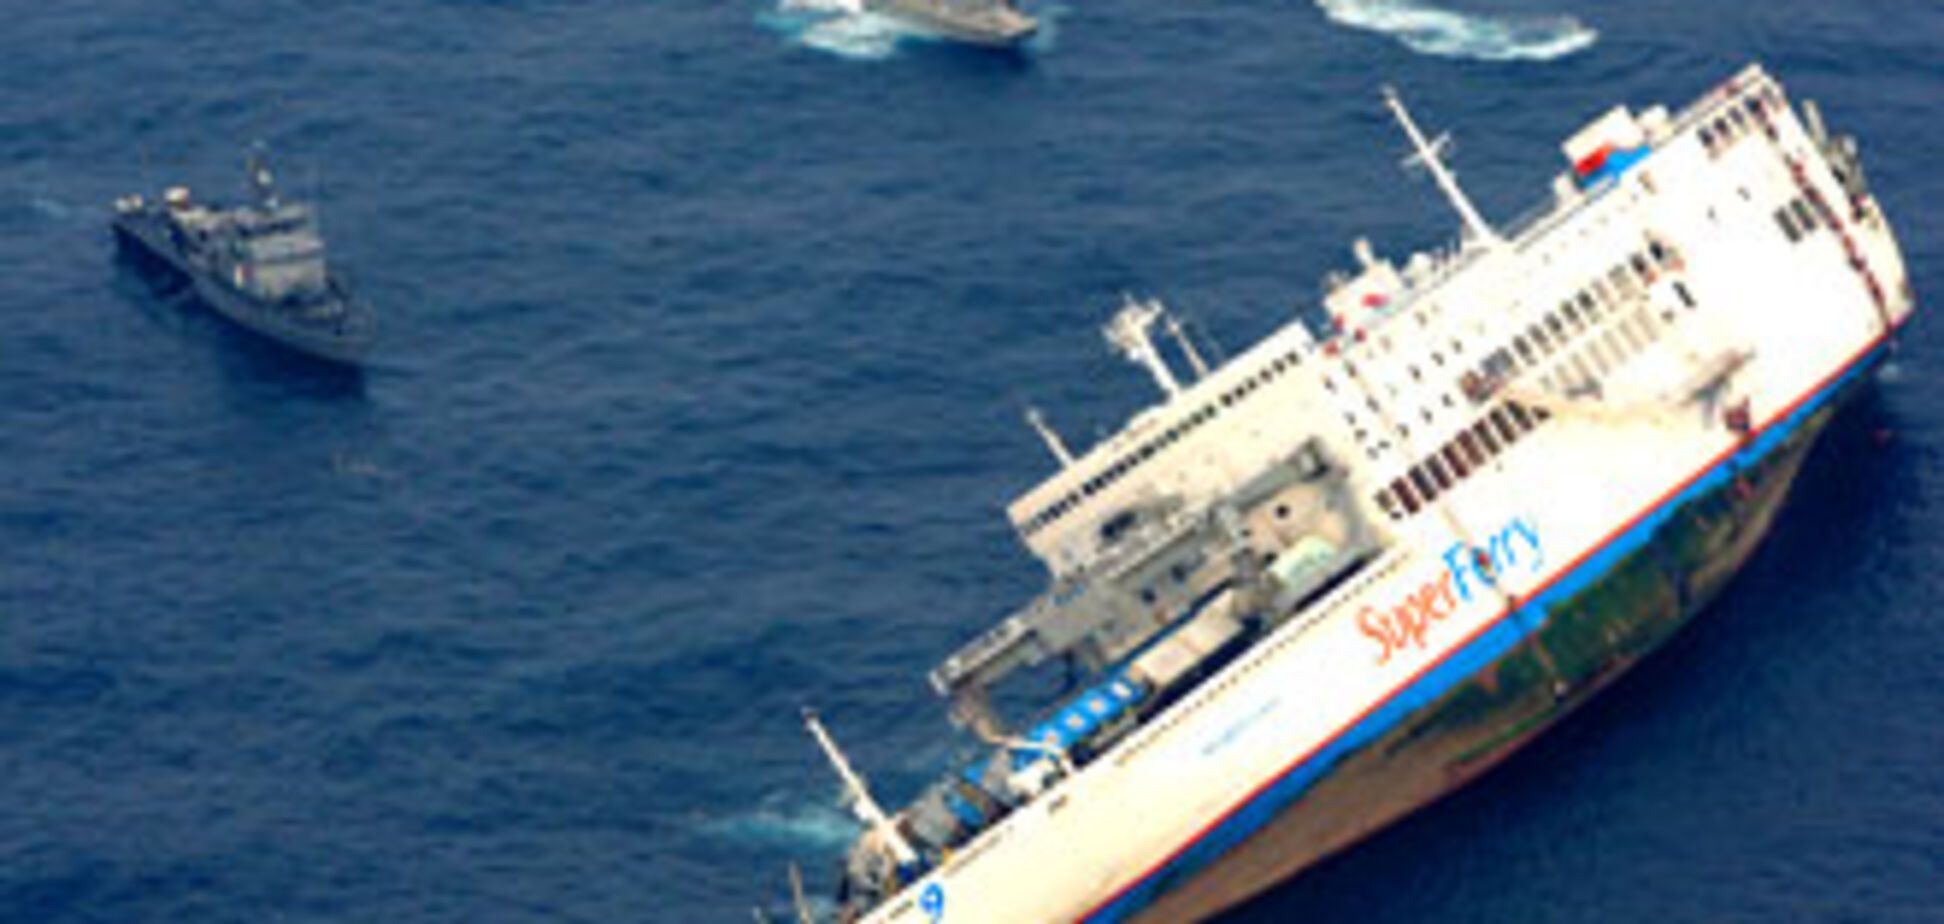 Паром с 900 пассажирами на борту ушел под воду (ФОТО)